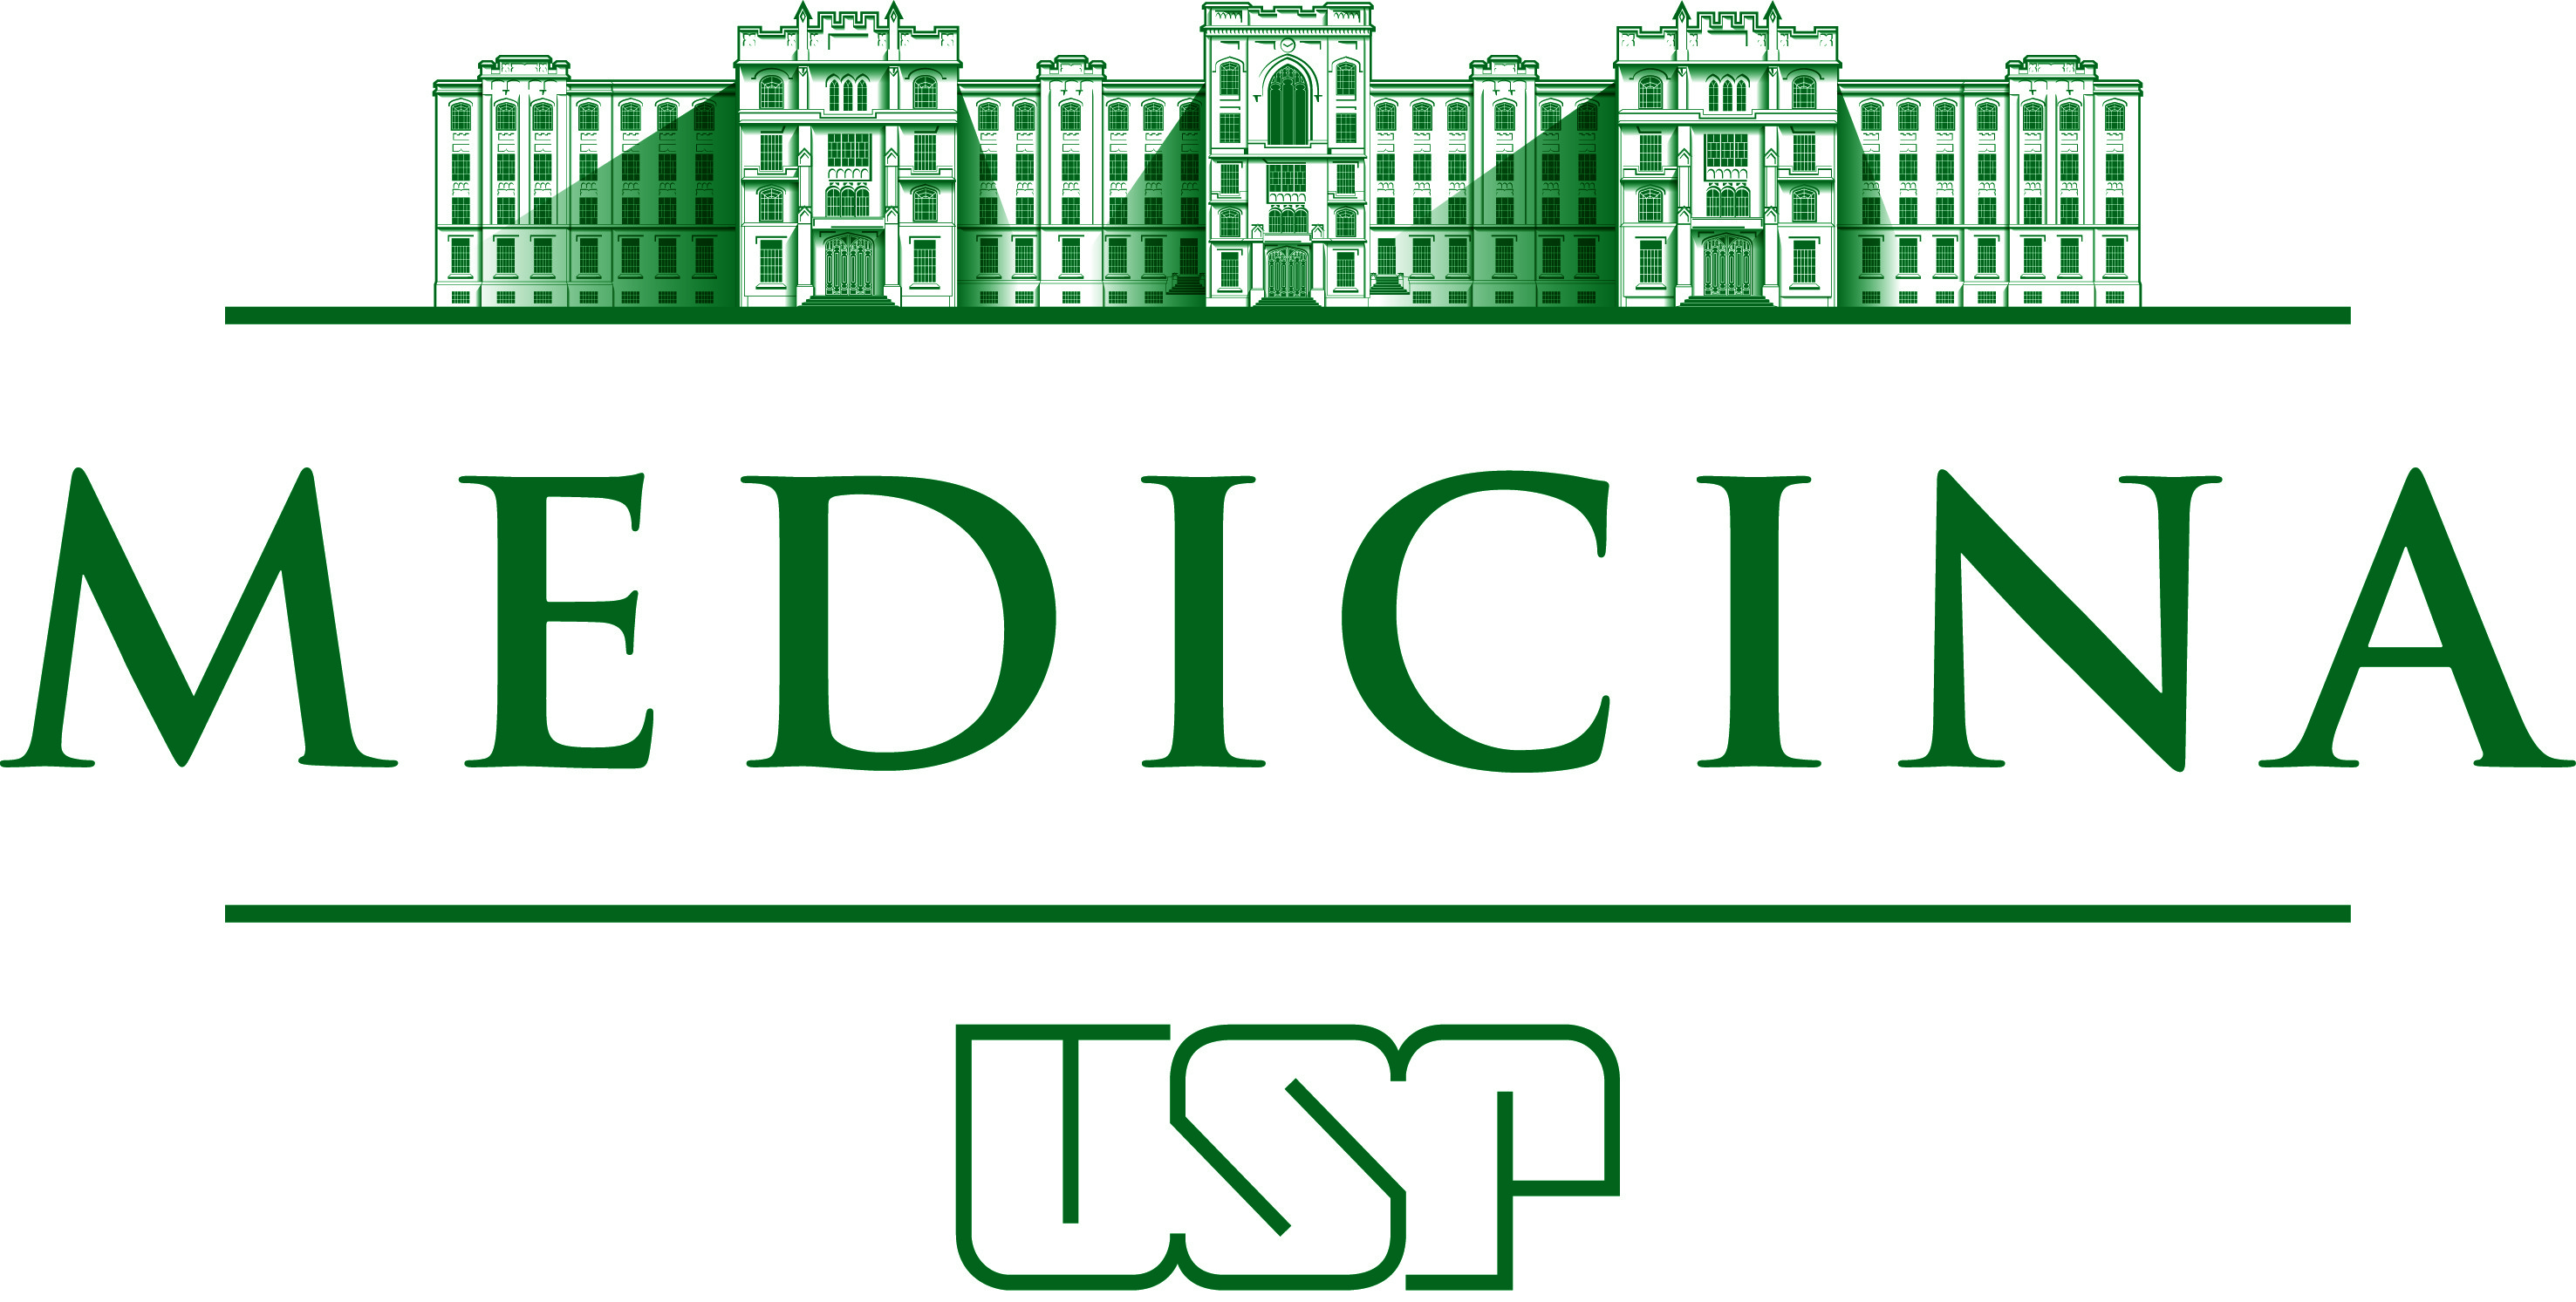 Logotipo – Faculdade de Medicina » USP Imagens - Banco de imagens da USP